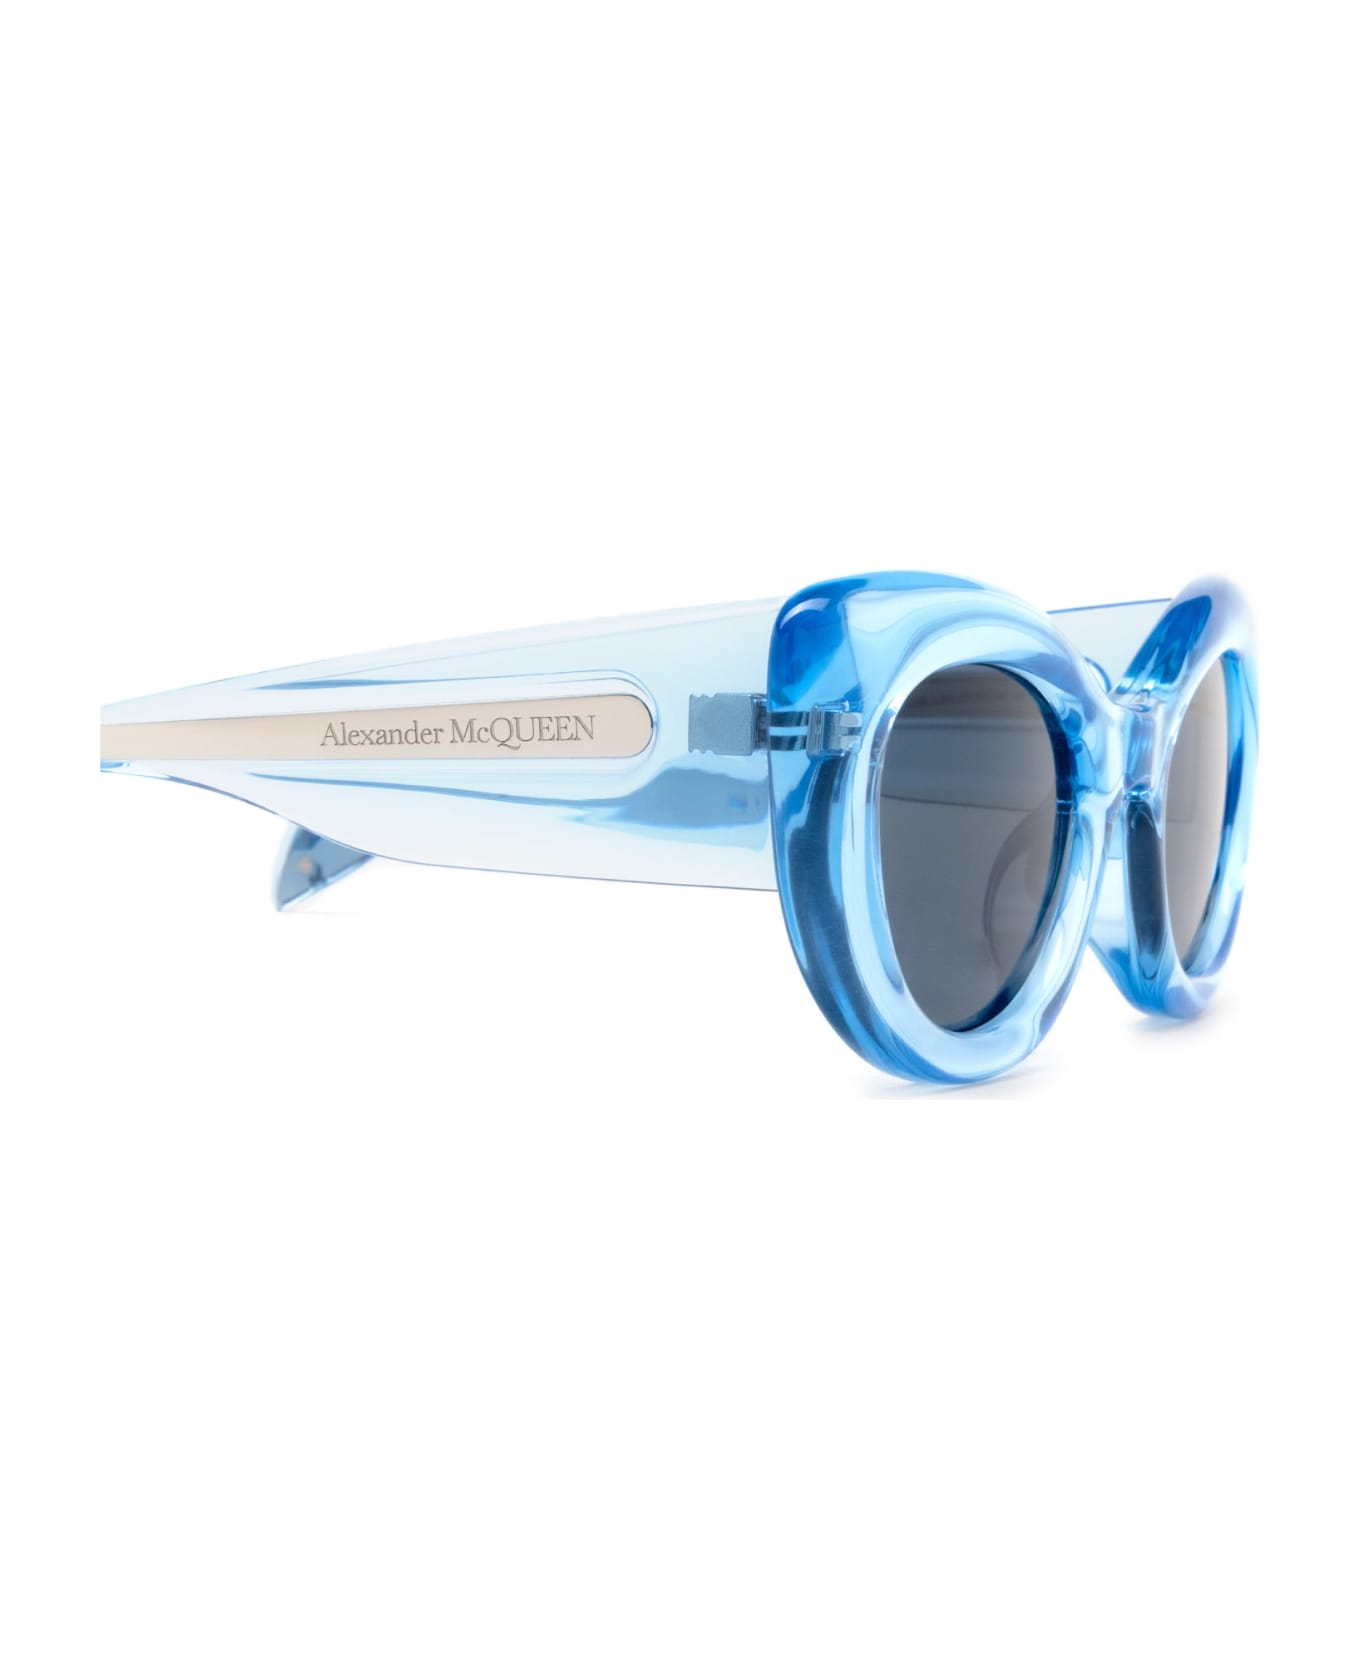 Alexander McQueen Eyewear Am0403s Light Blue Sunglasses - Light Blue サングラス